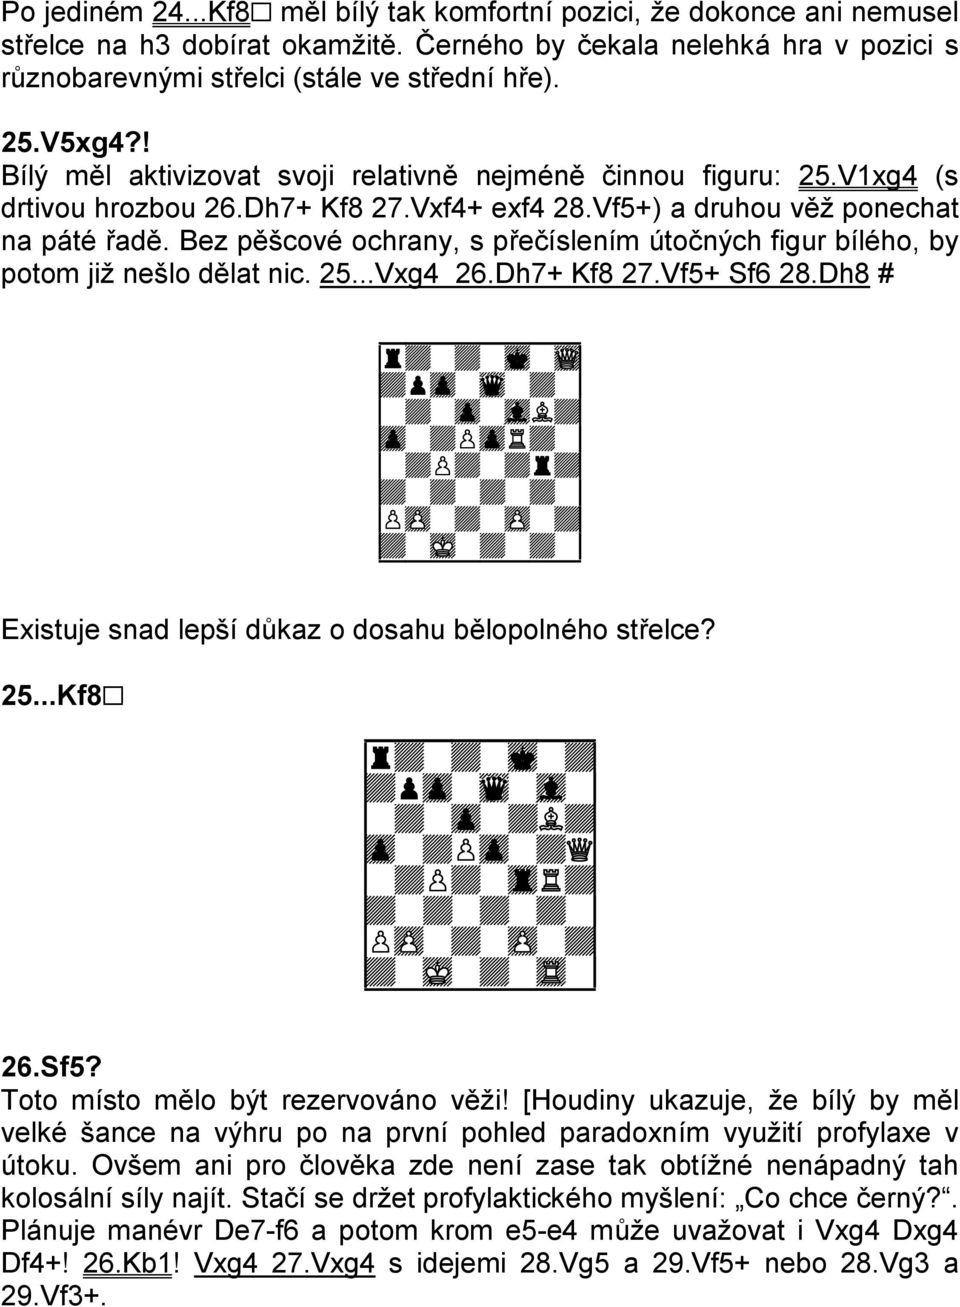 Bez pěšcové ochrany, s přečíslením útočných figur bílého, by potom již nešlo dělat nic. 25...Vxg4 26.Dh7+ Kf8 27.Vf5+ Sf6 28.